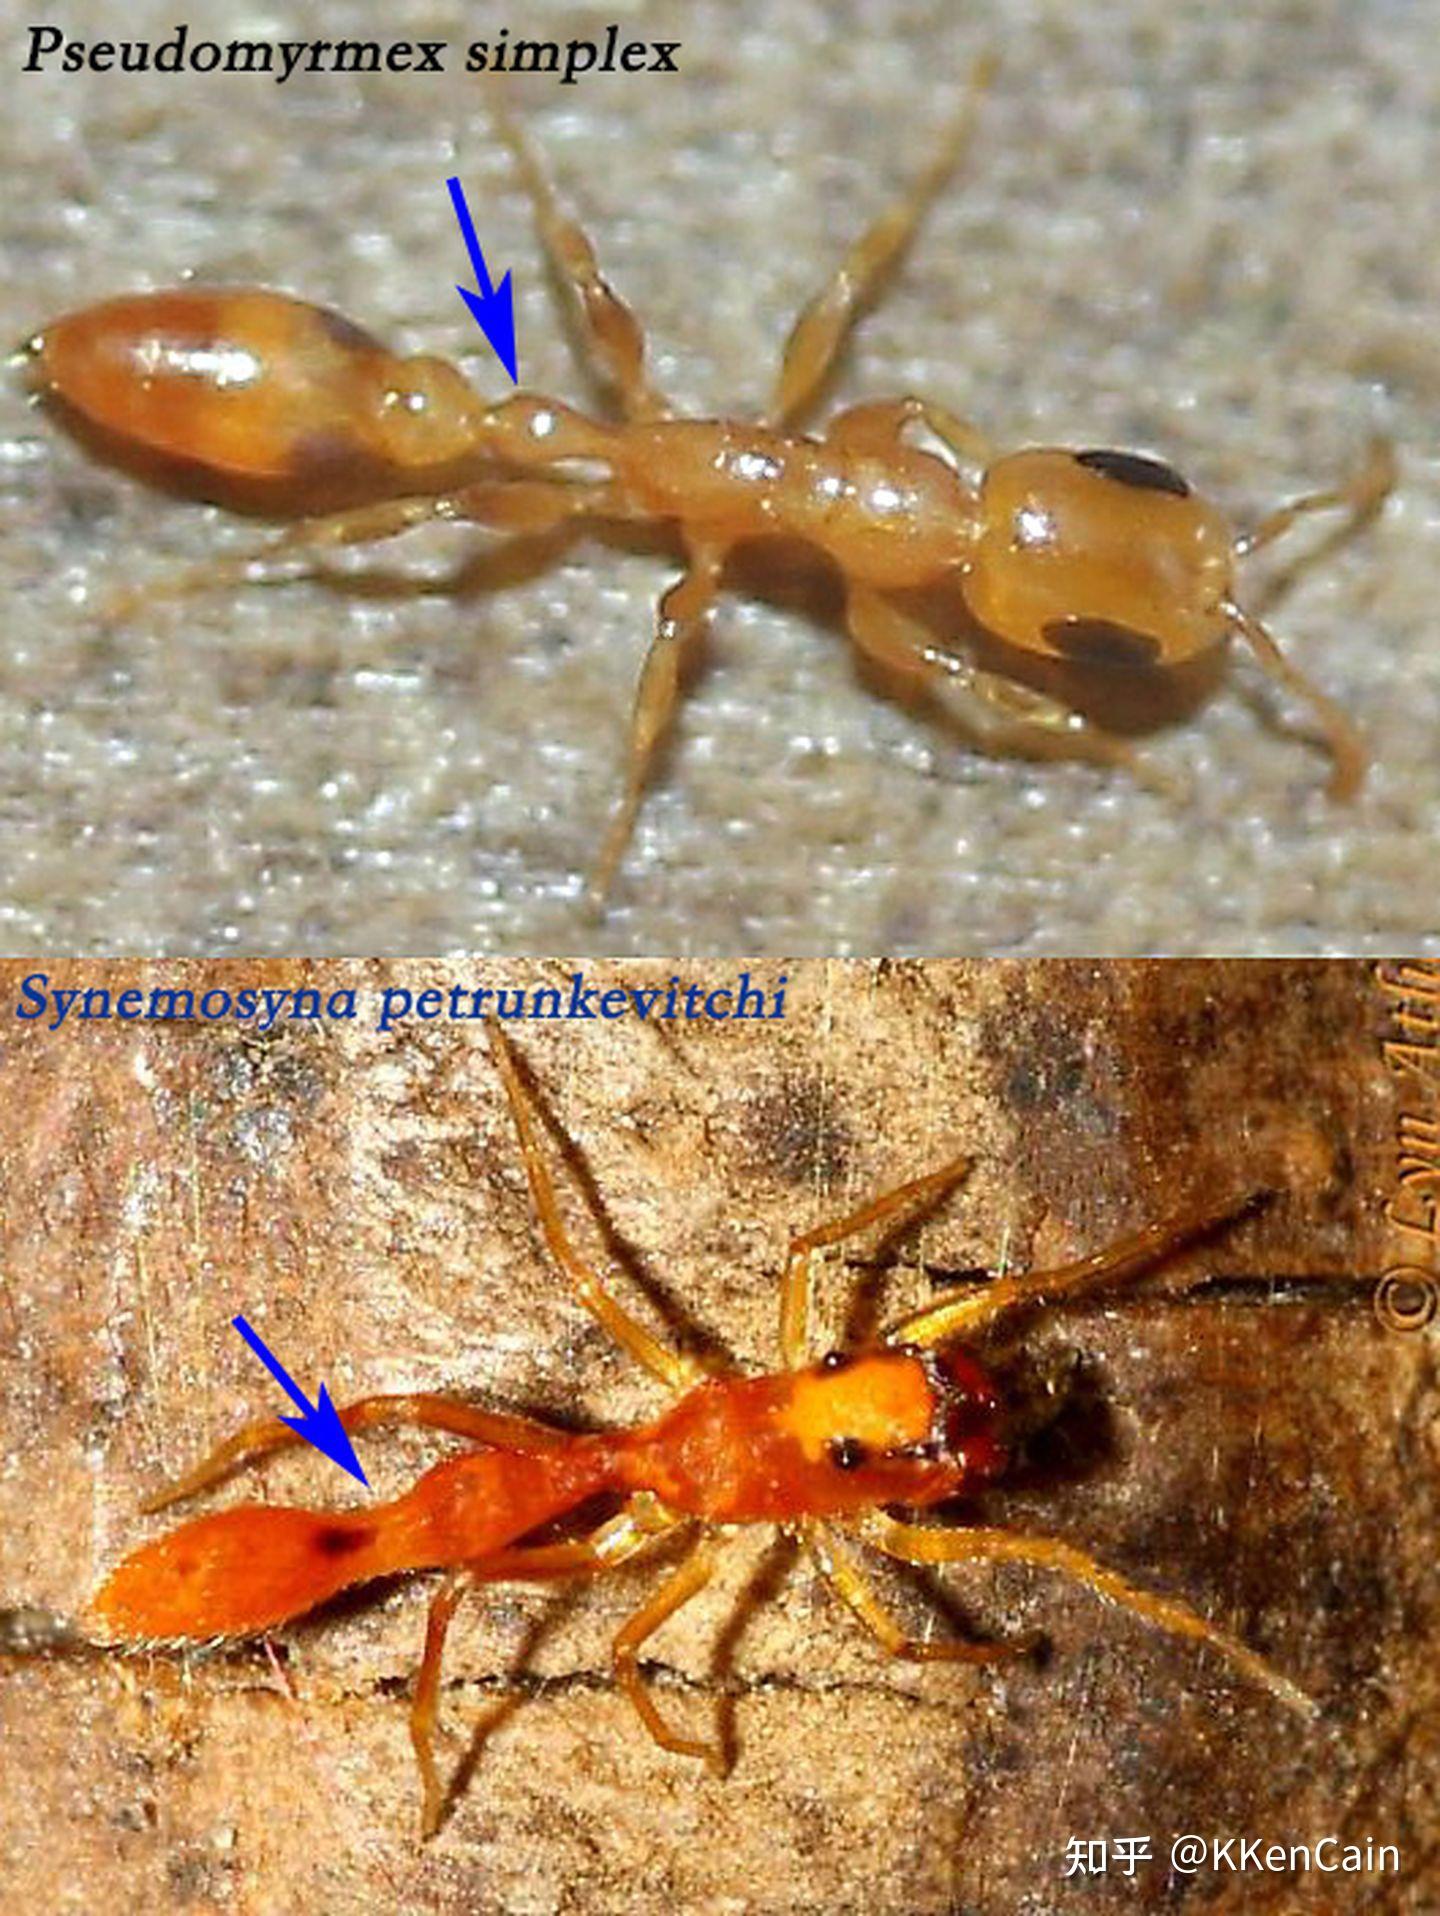 请问这是什么昆虫?爬行似蚂蚁,外观像蜘蛛?